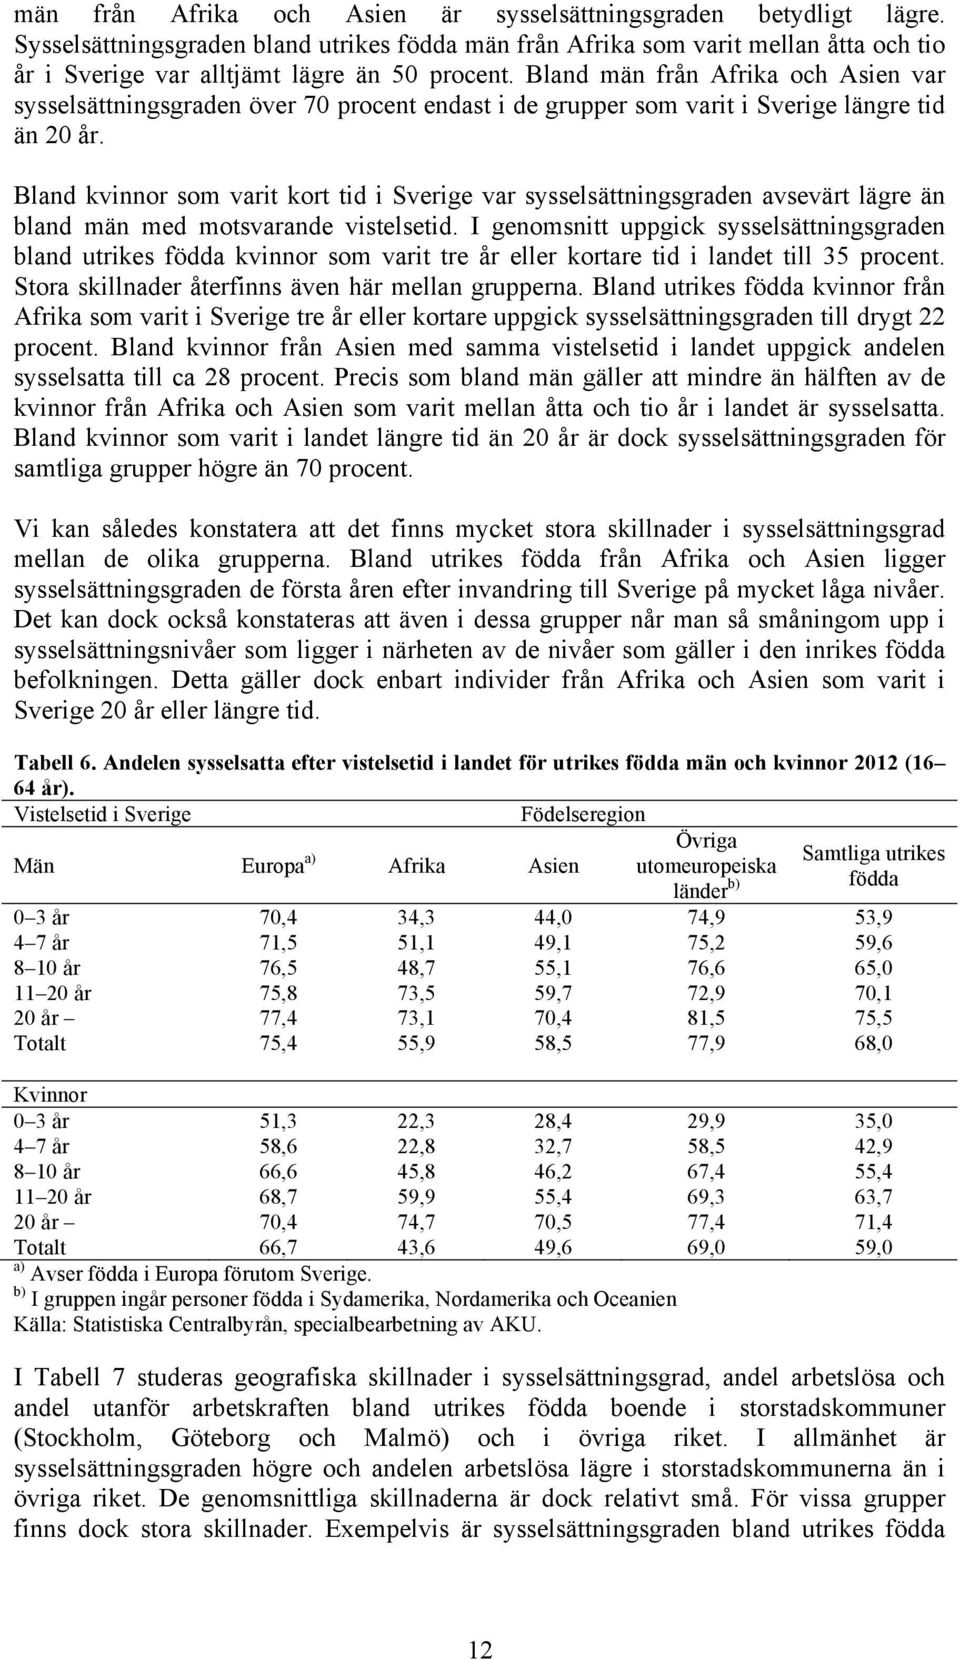 Bland män från Afrika och Asien var sysselsättningsgraden över 70 procent endast i de grupper som varit i Sverige längre tid än 20 år.